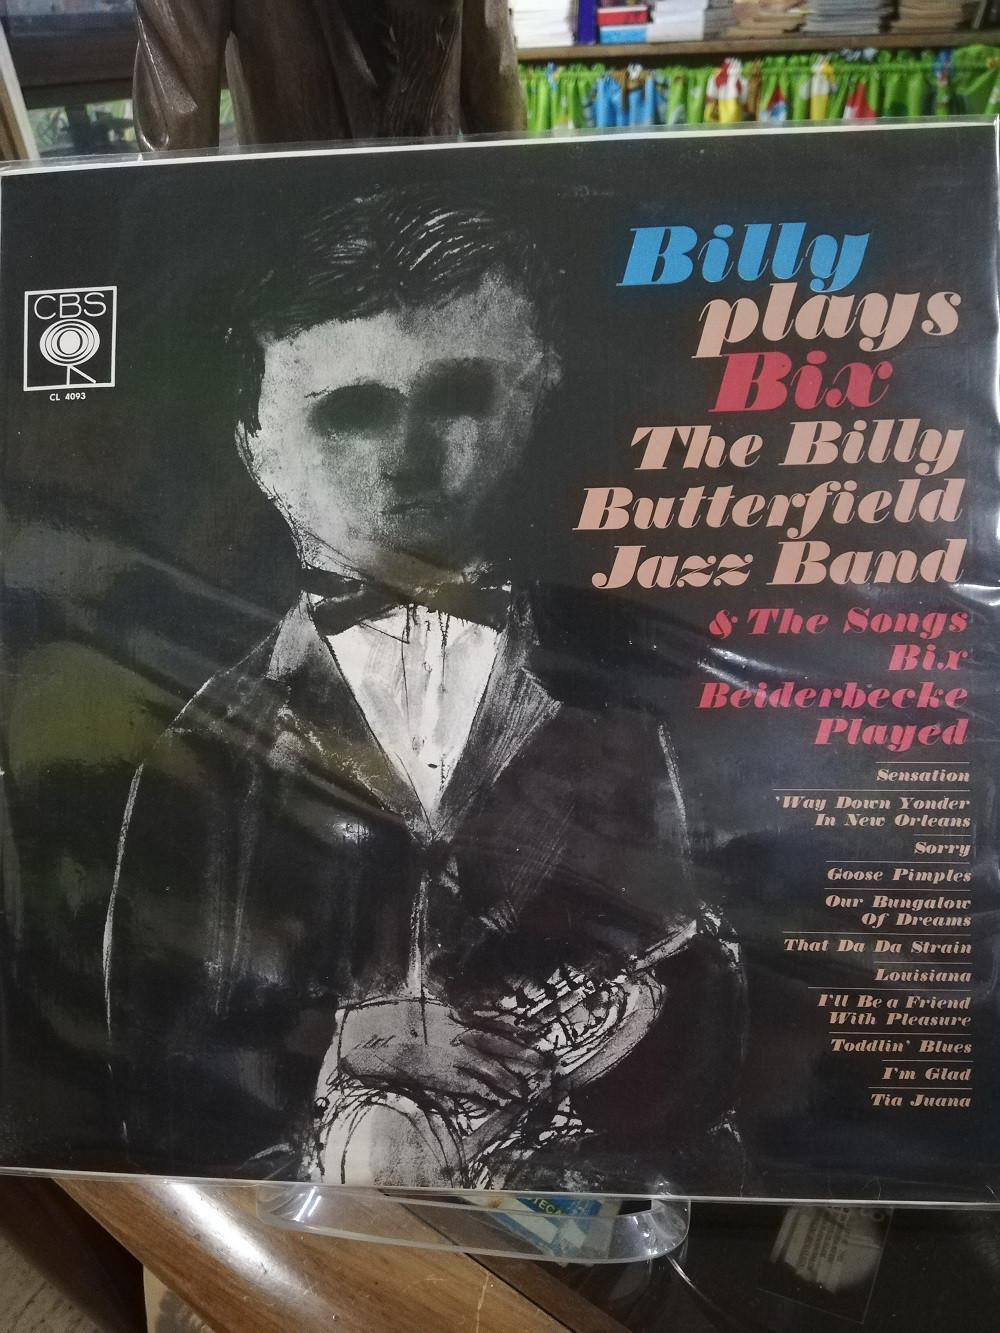 Imagen LP THE BILLY BUTTERFIELD JAZZ BAND - BILLY PLAYS BIX